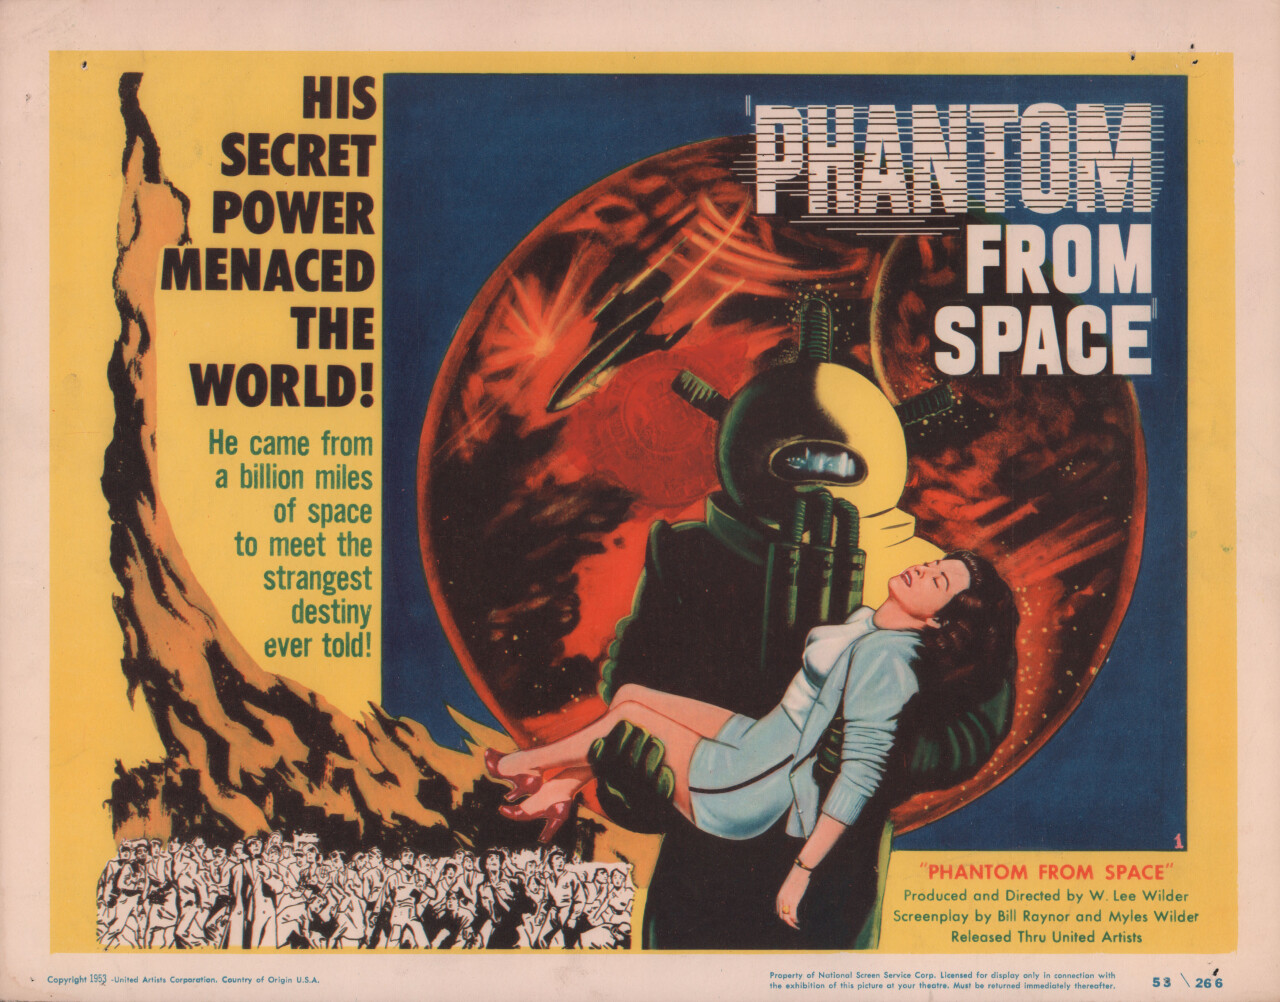 Призрак из космоса (Phantom from Space, 1953), режиссёр У. Ли Уайлдер, американский постер к фильму (ужасы, 1953 год)